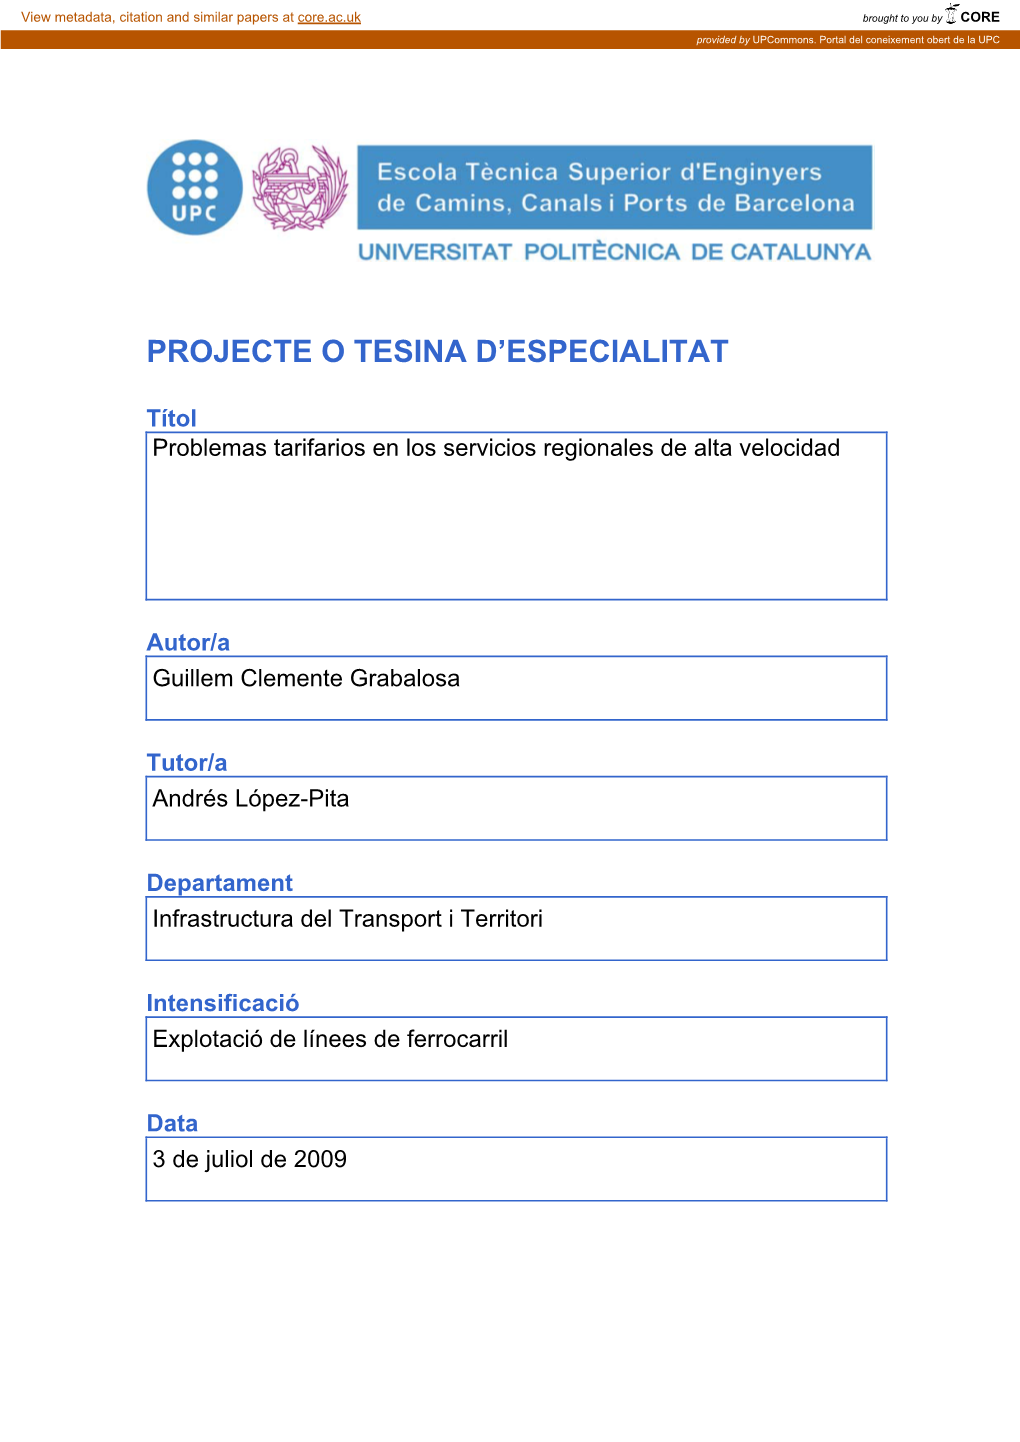 Projecte O Tesina D'especialitat